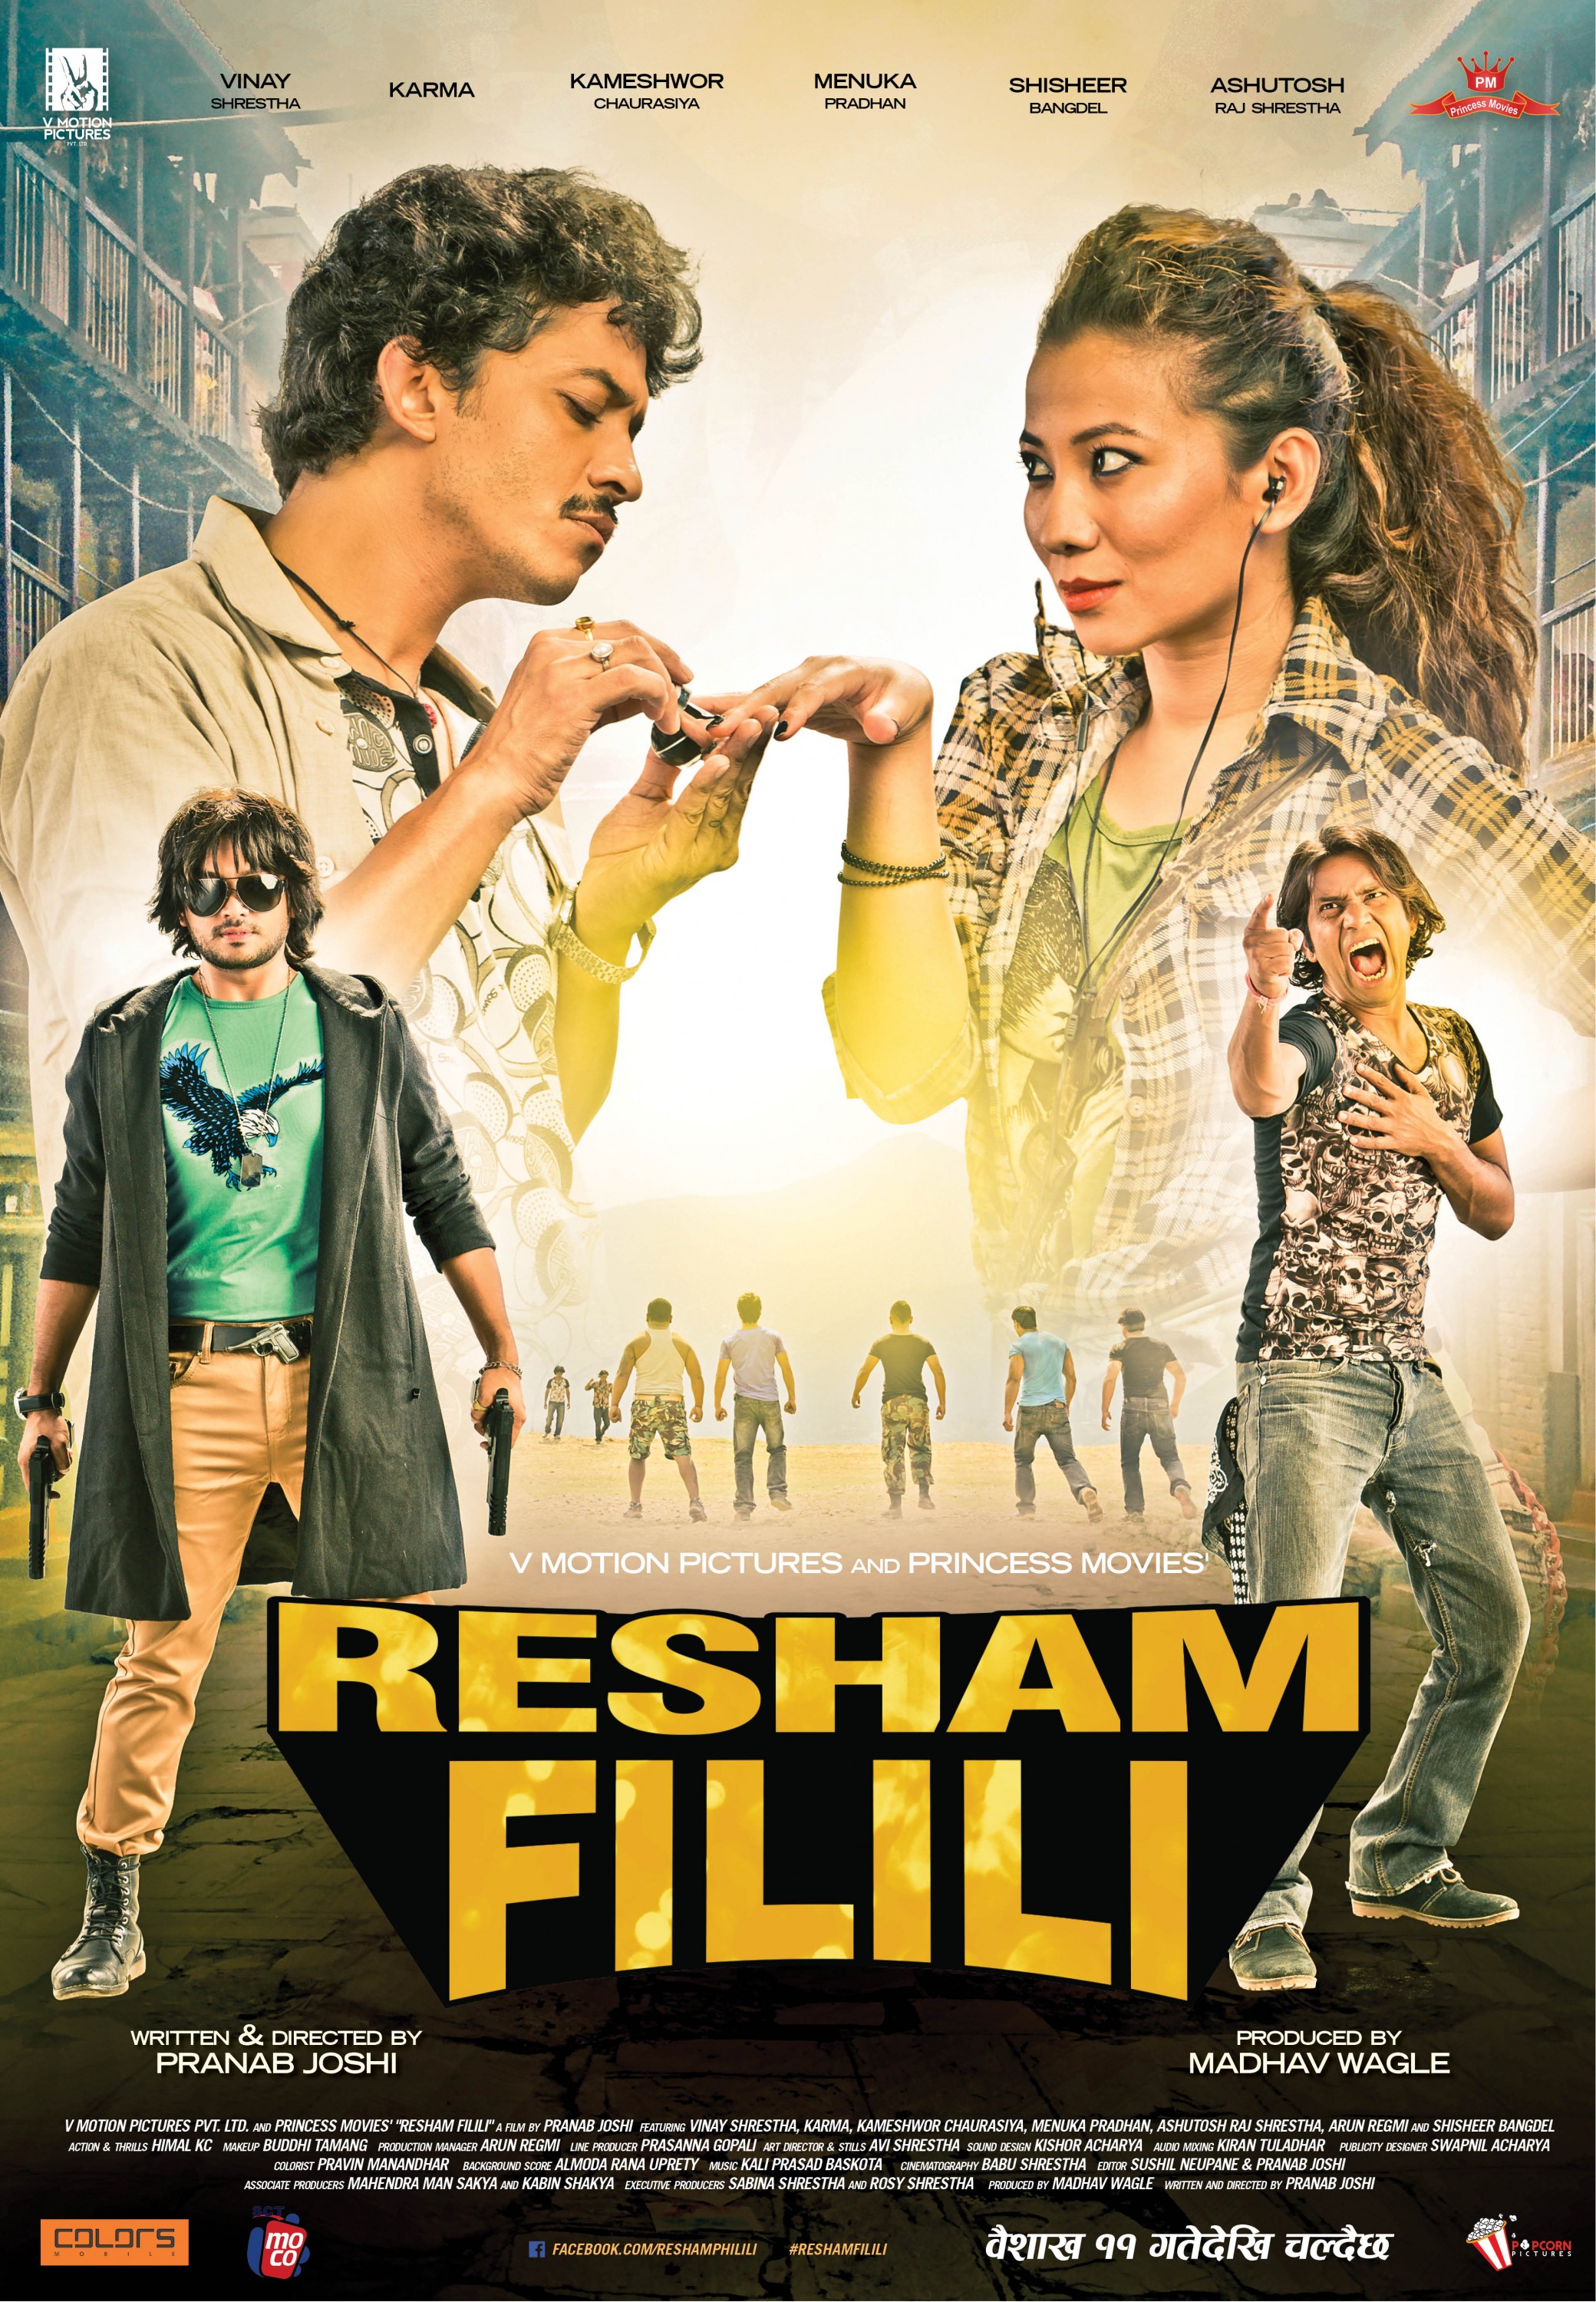 Mega Sized Movie Poster Image for Resham Filili (#5 of 11)